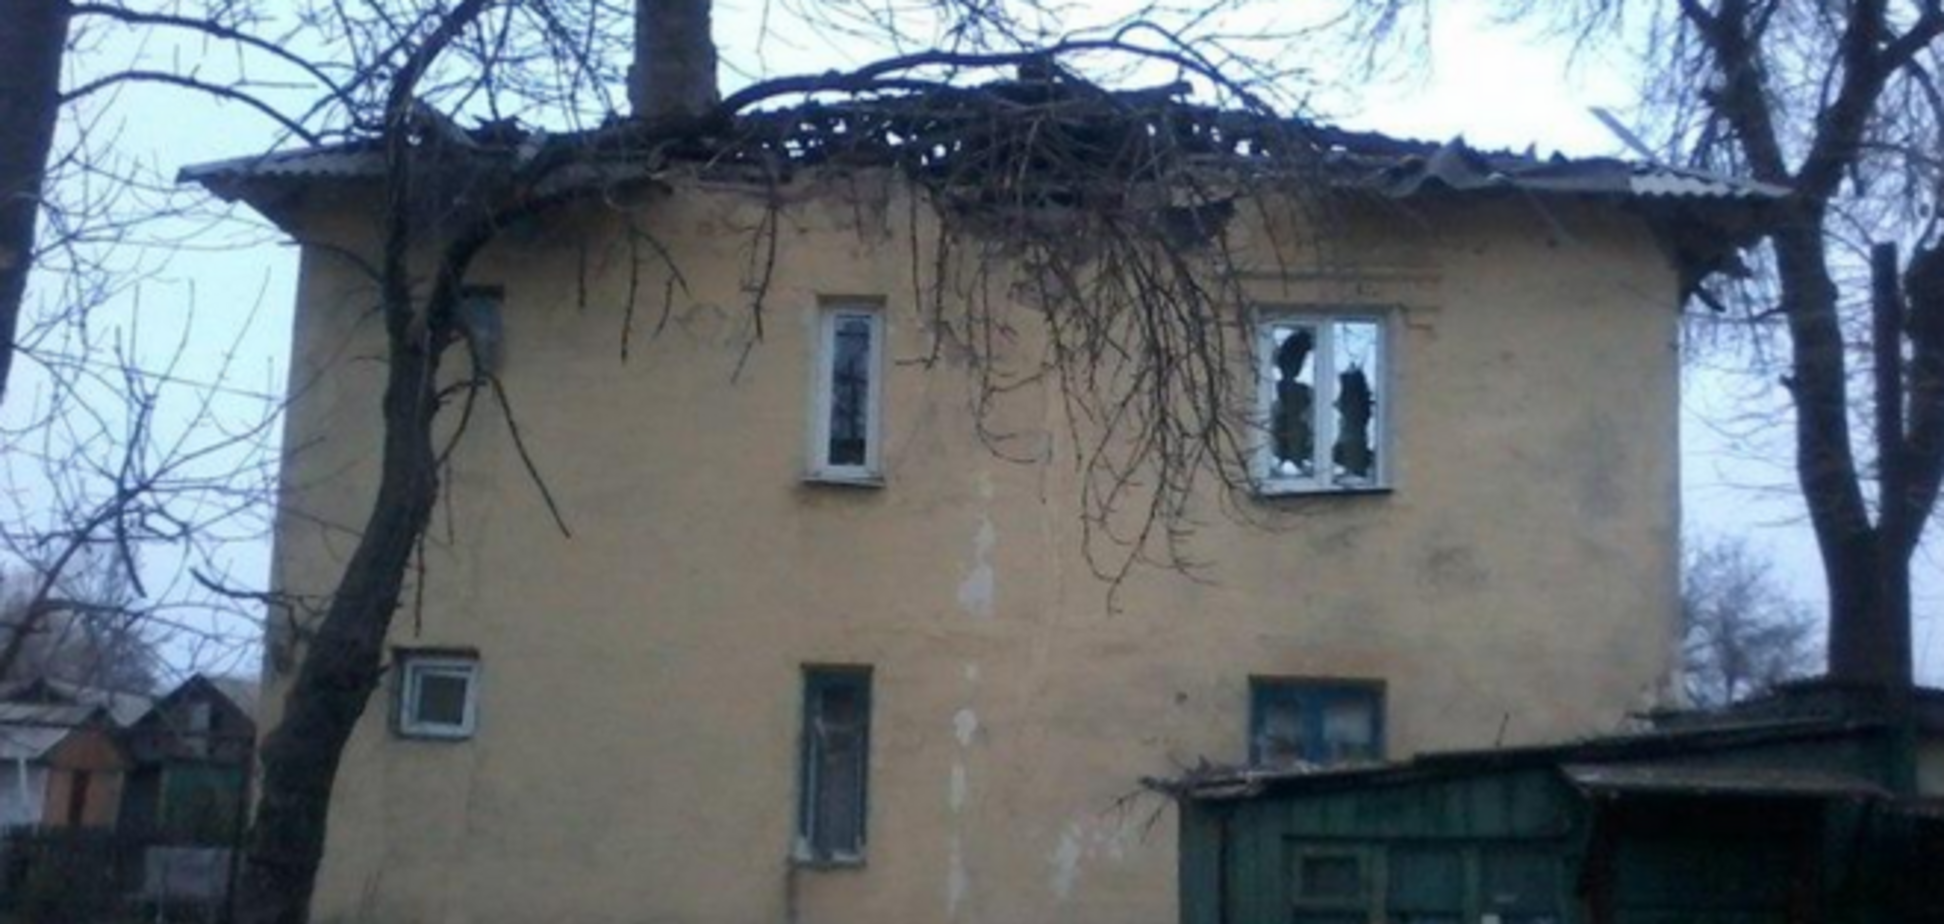 Многие жители Донецка после ночного обстрела лишились крыши над головой: опубликованы фото разрушений